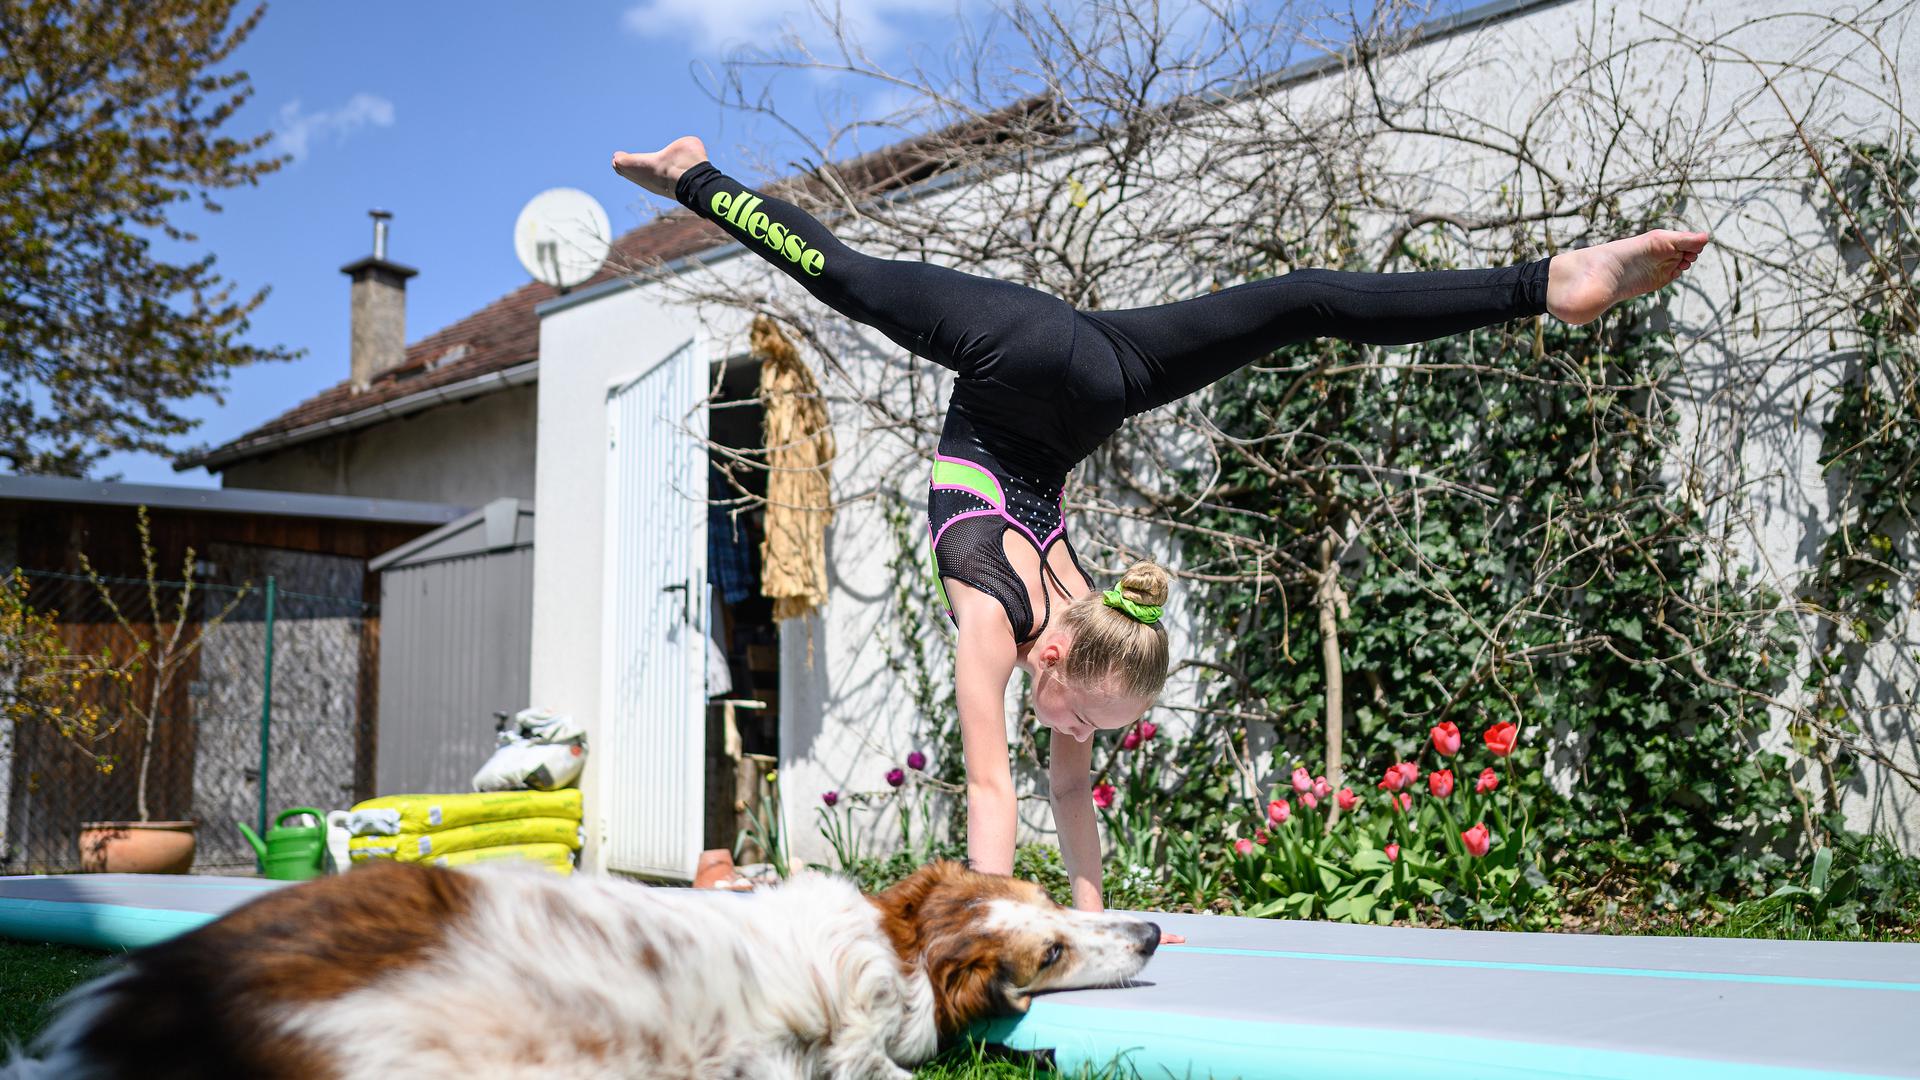 Jette Schroeder (KRK) trainiert im Garten des elterlichen Hauses auf einer AirTrack Matte. Hund Sally schaut zu.

GES/ Turnen/ Home-Training in Corona-Zeiten. 21.4.2021

